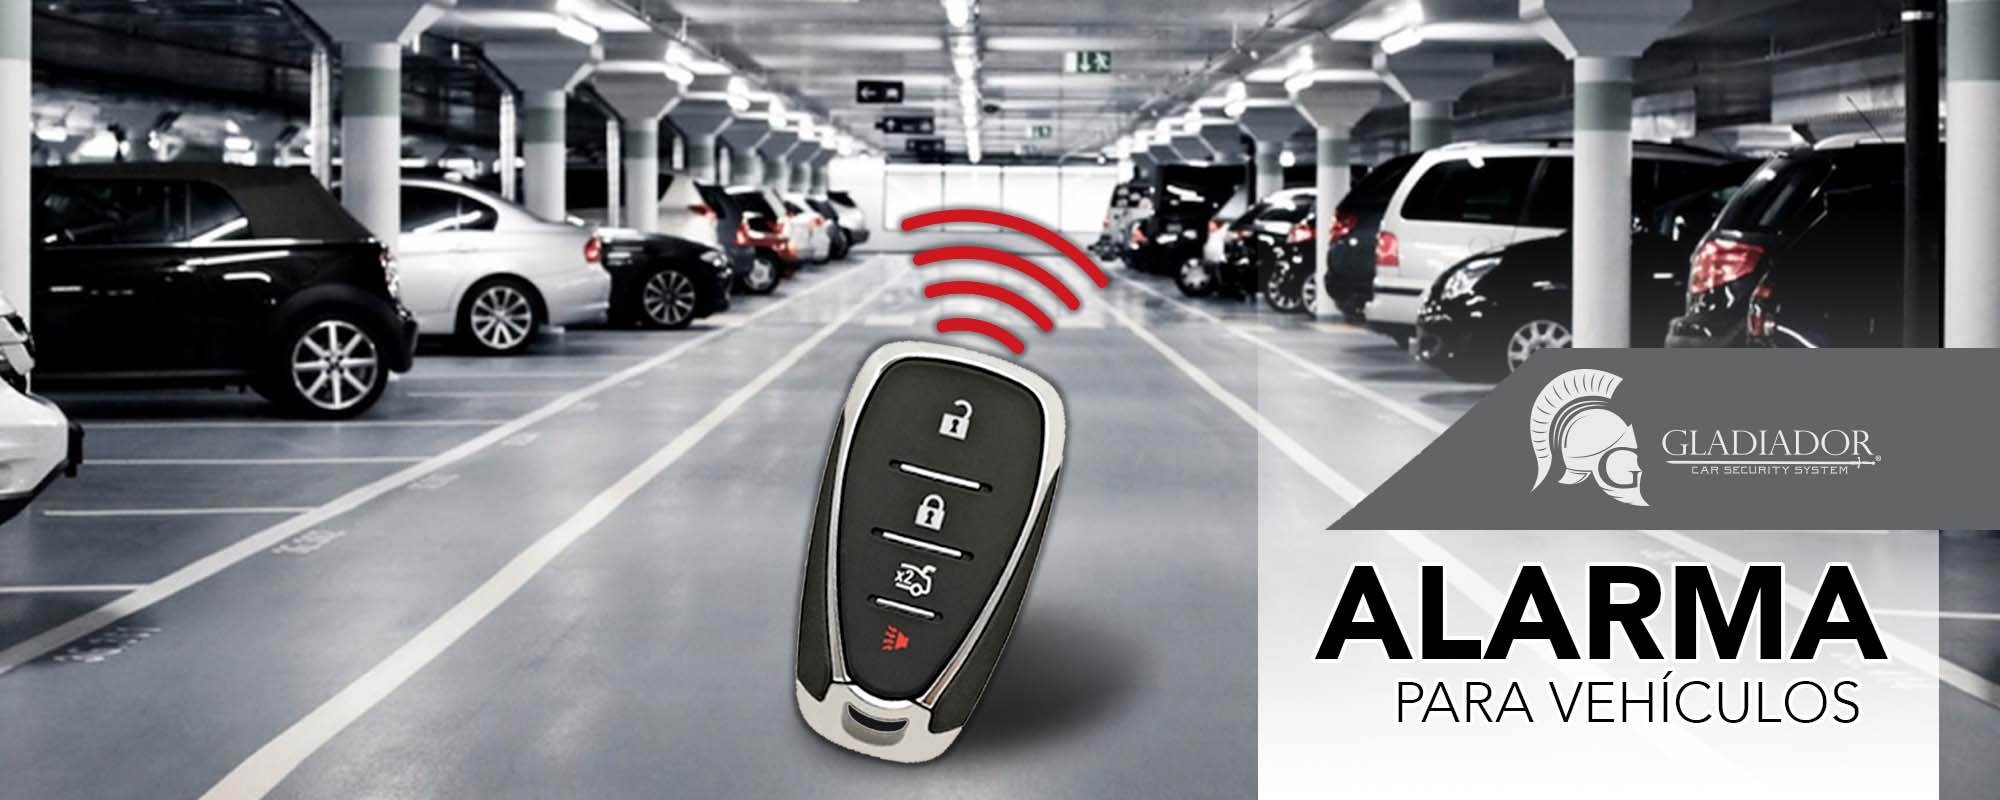 Alarma para Vehículos Gladiador - ACGD-701 - Gladiador Car Alarm - Sistemas  de Seguridad para toda Latinoamérica